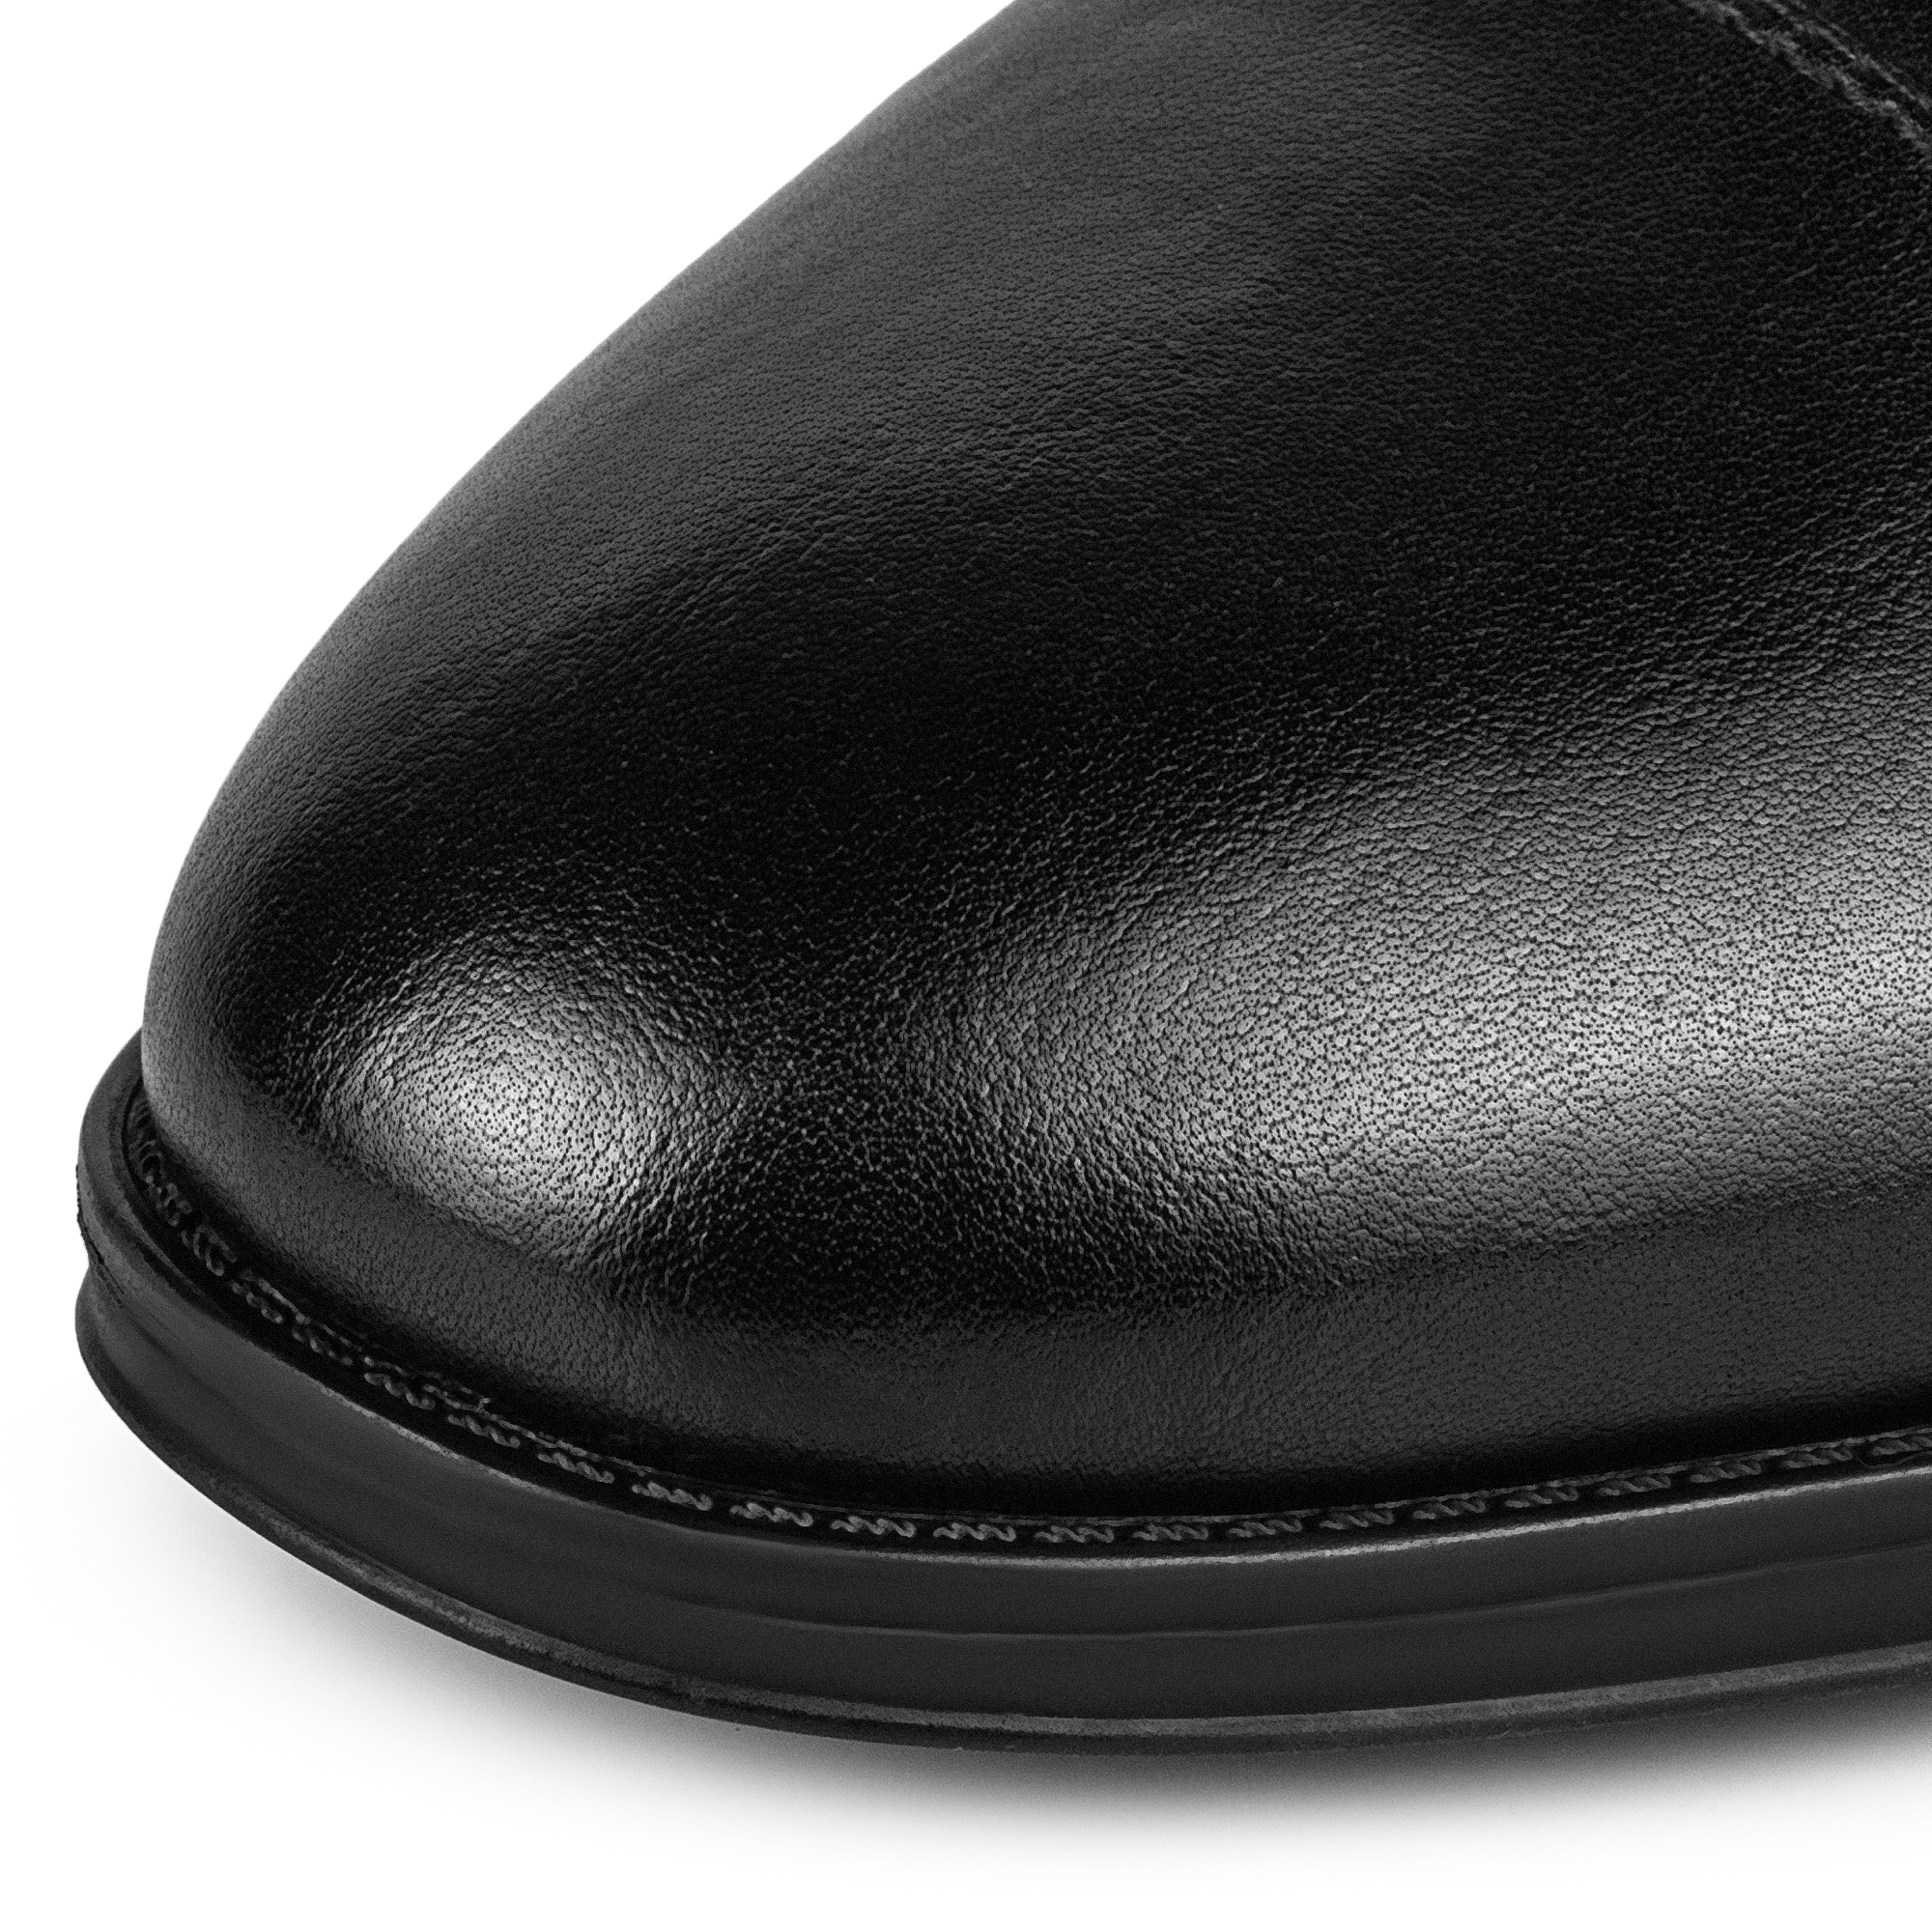 Туфли Thomas Munz 104-630A-1602, цвет черный, размер 41 - фото 6